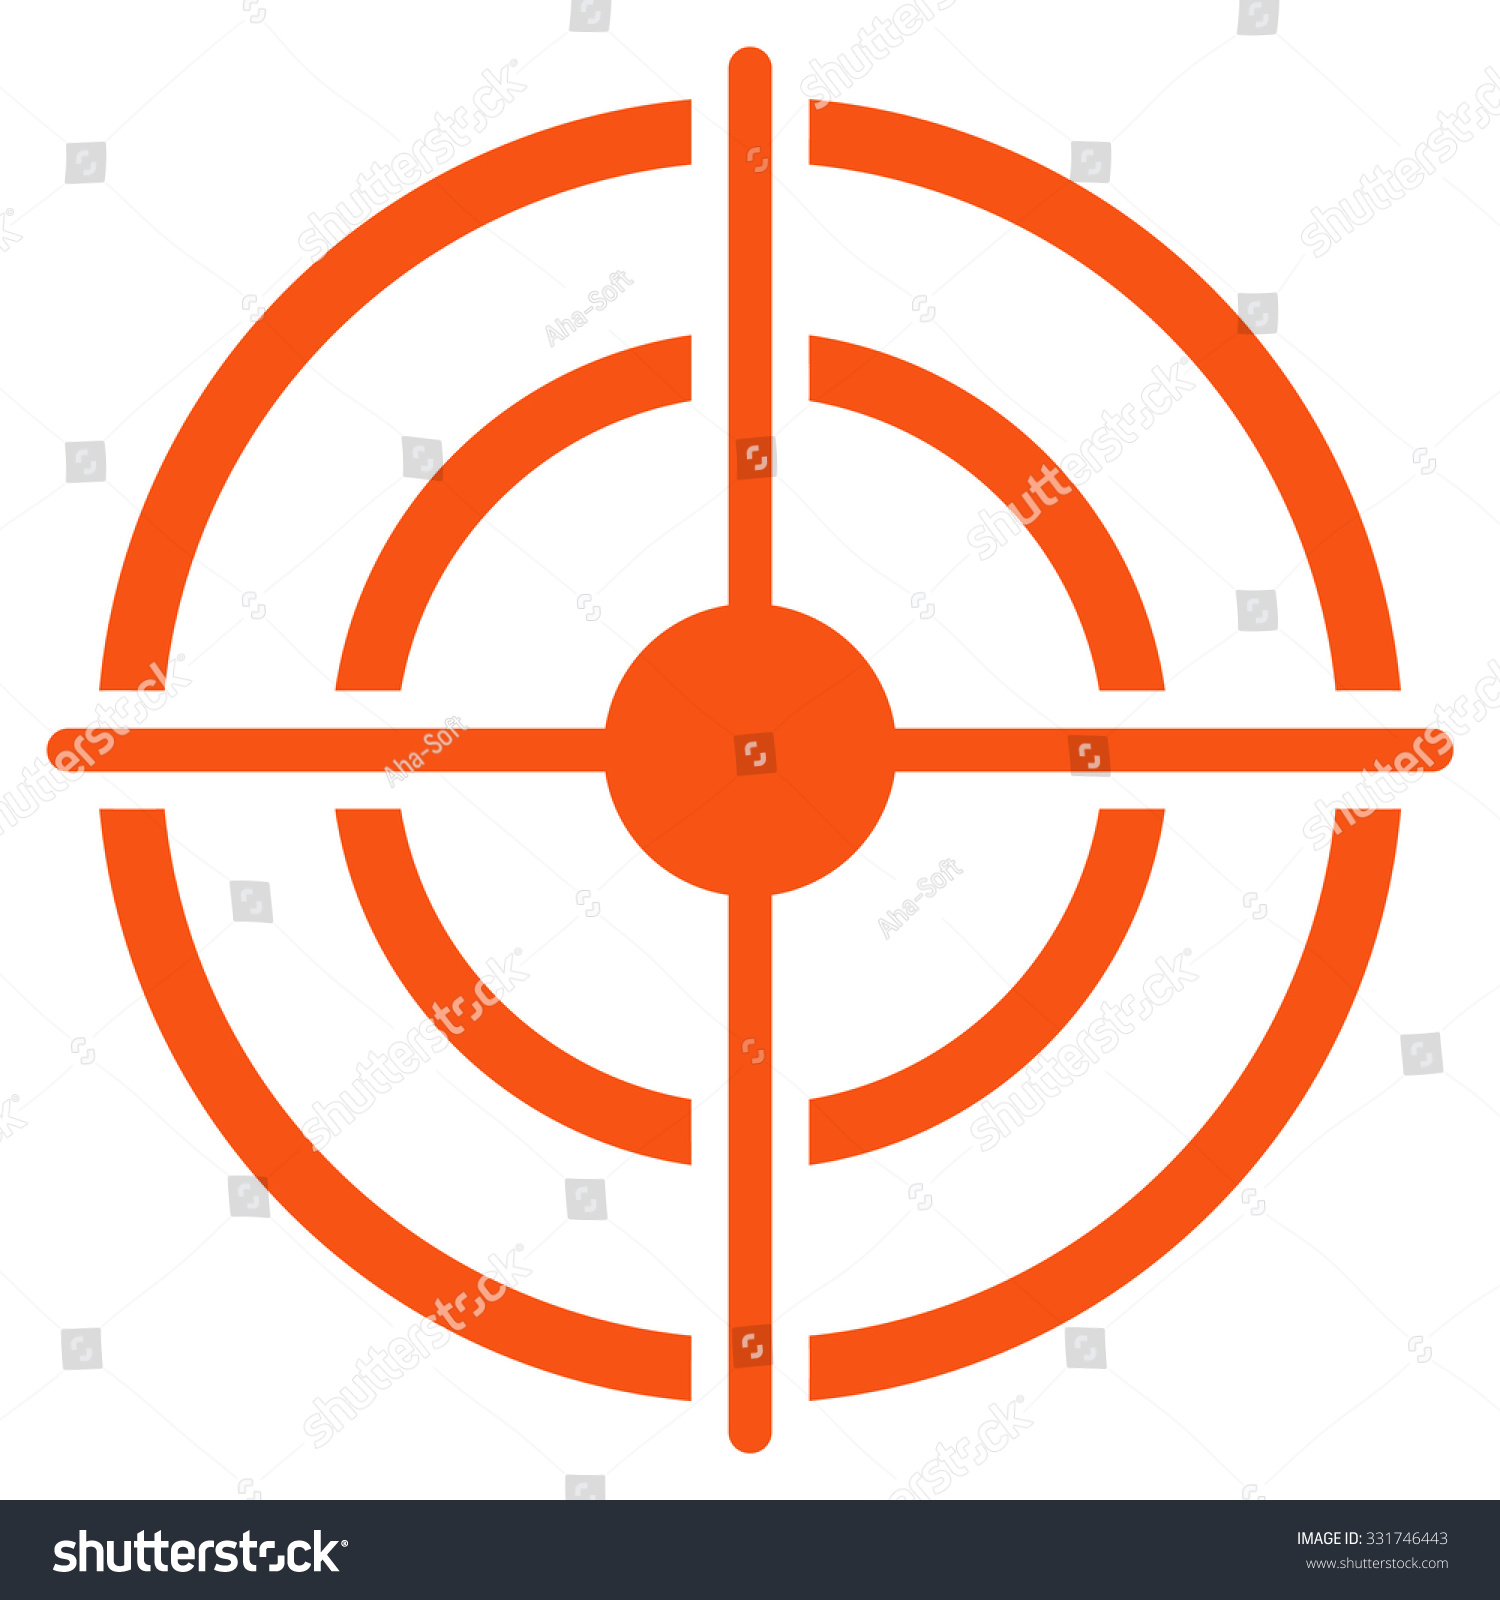 target symbols clip art - photo #38